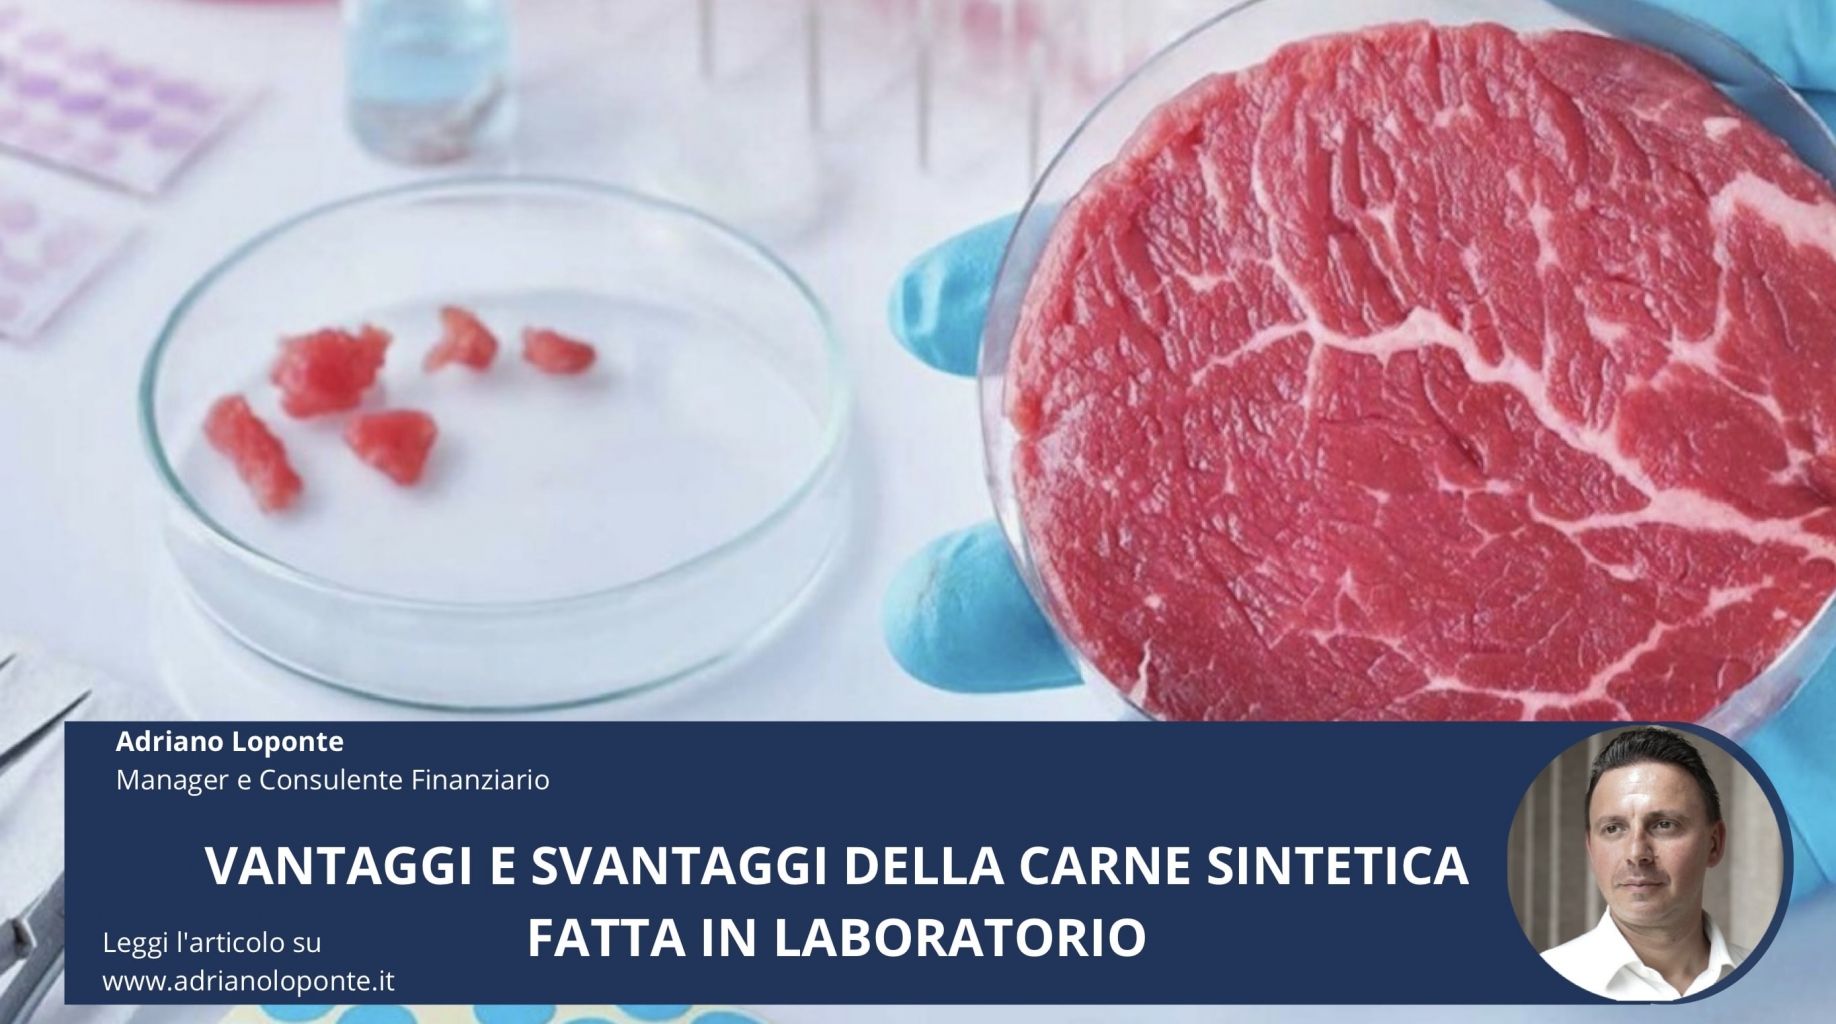 Vantaggi e svantaggi della carne sintetica fatta in laboratorio